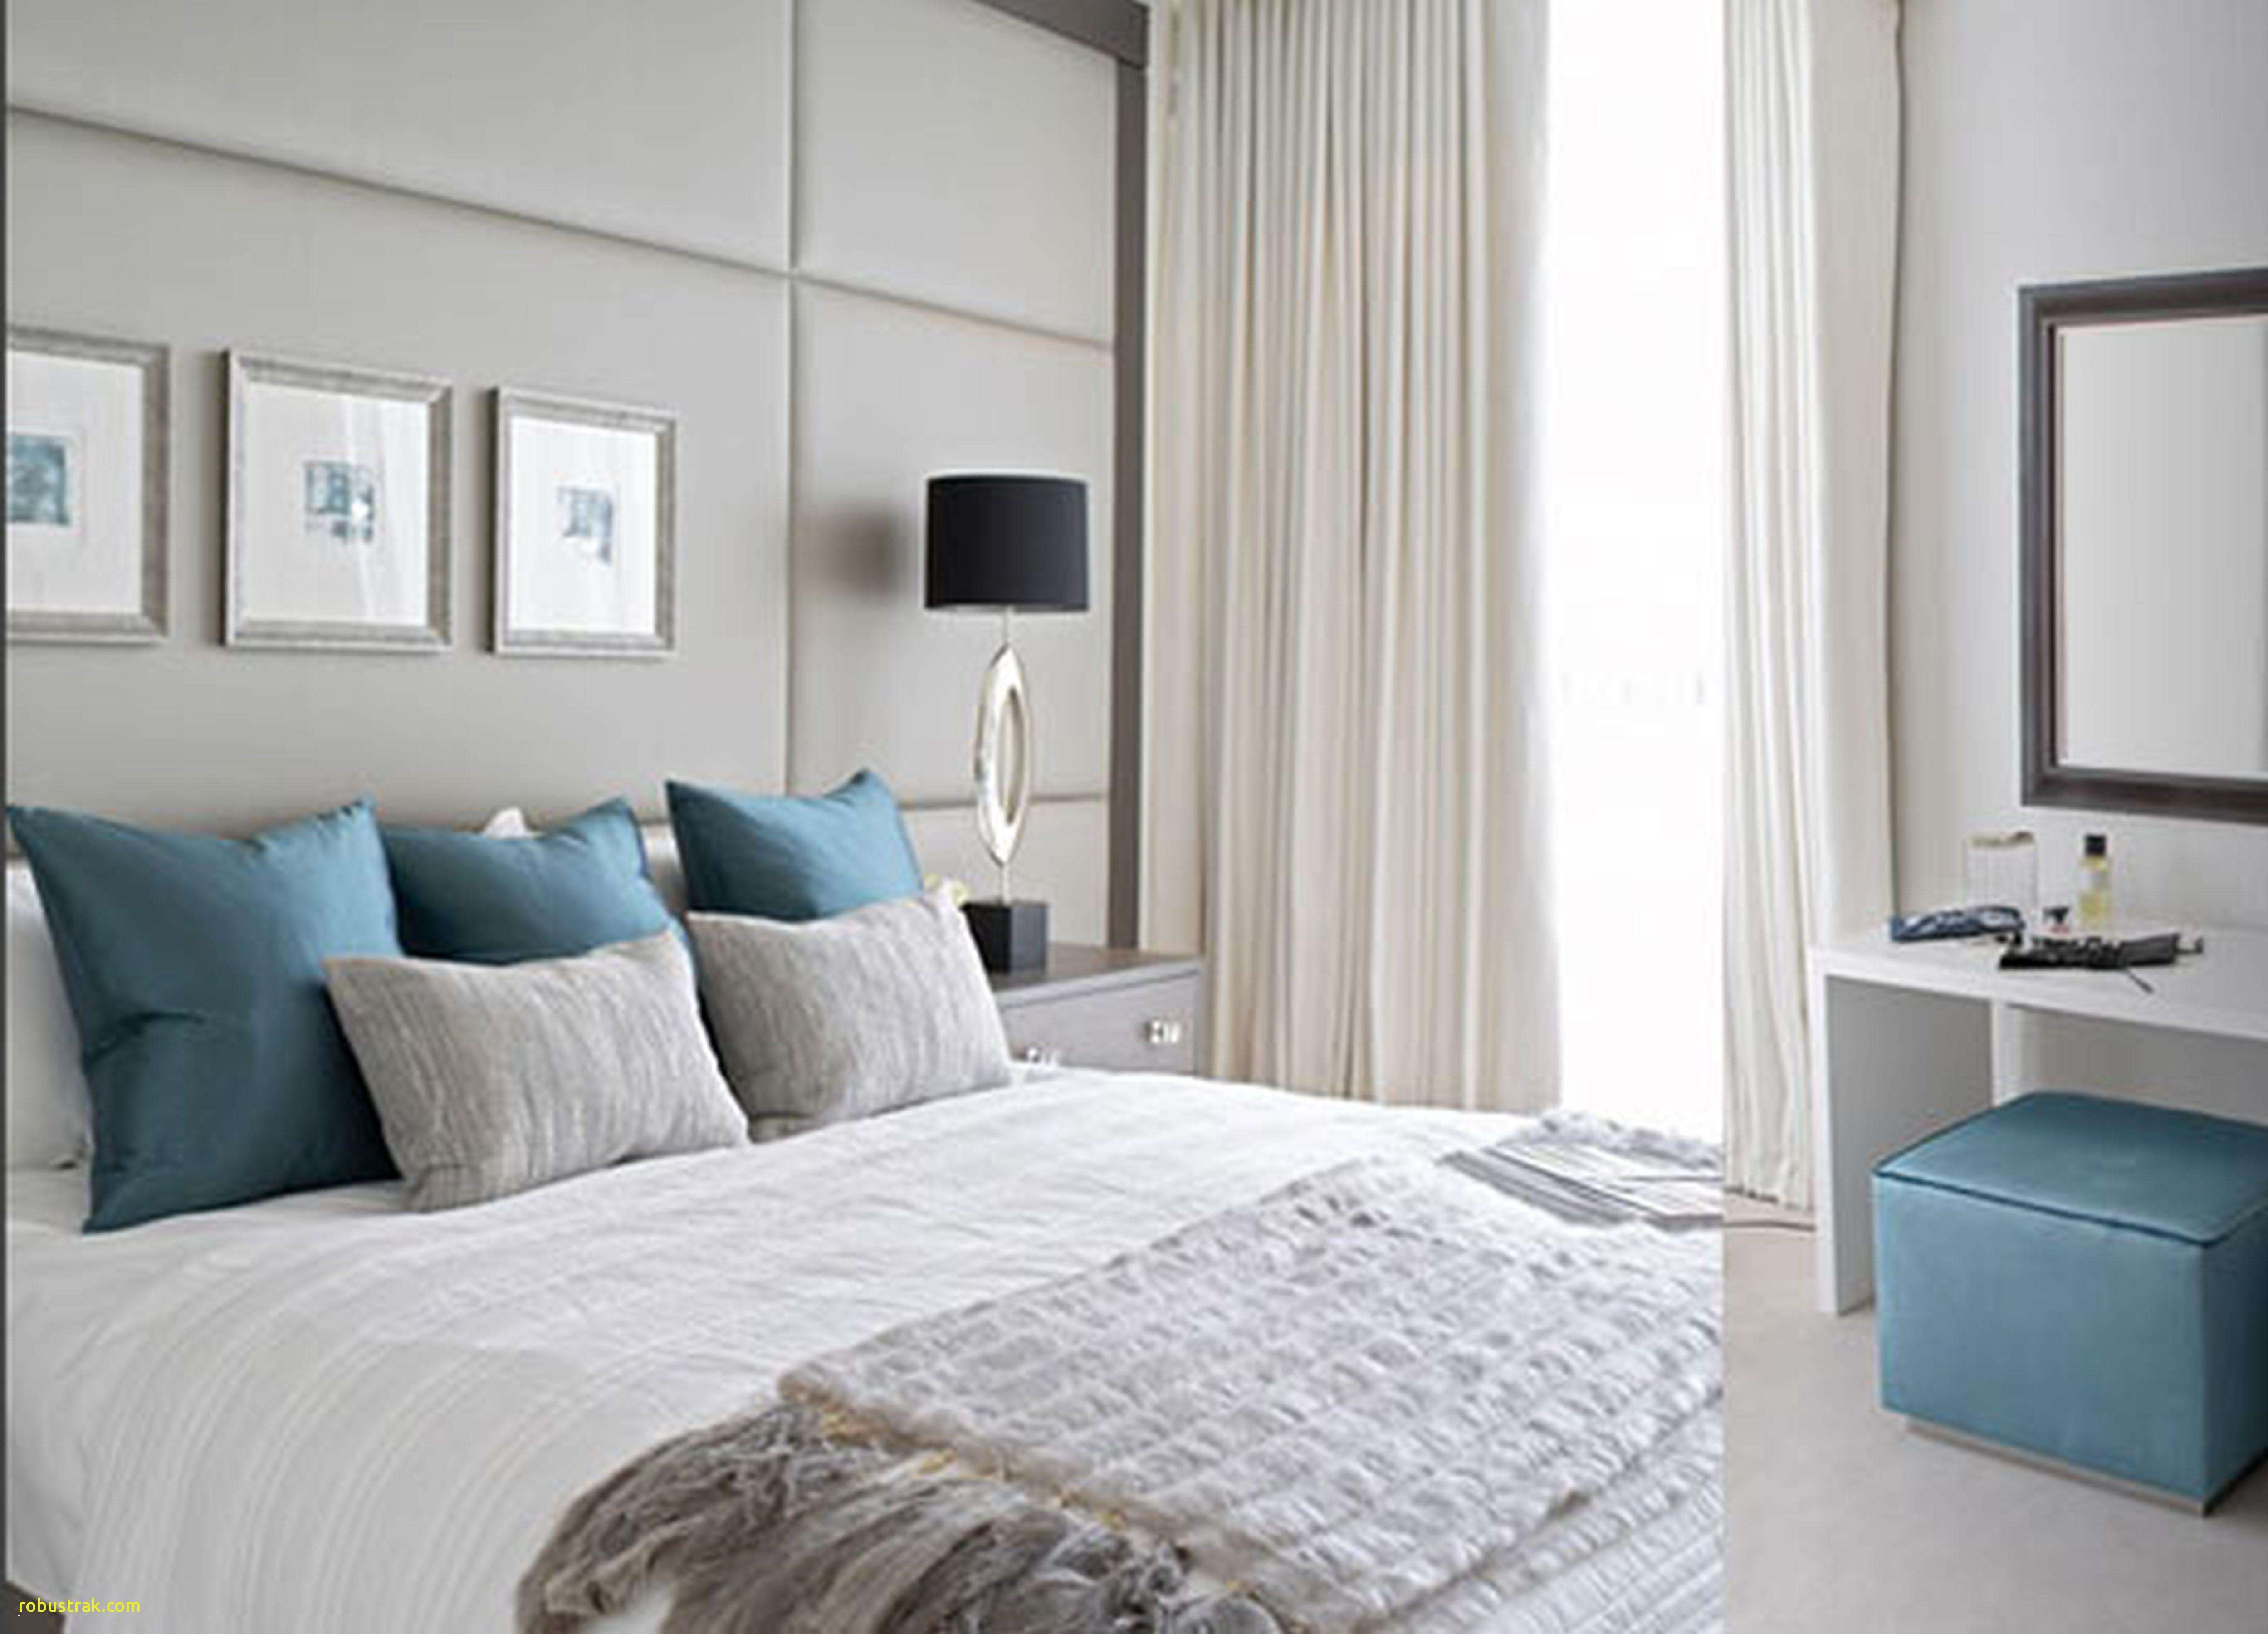 Best Lighting for Bedroom Elegant 18 Amazing Light Gray Hardwood Floors